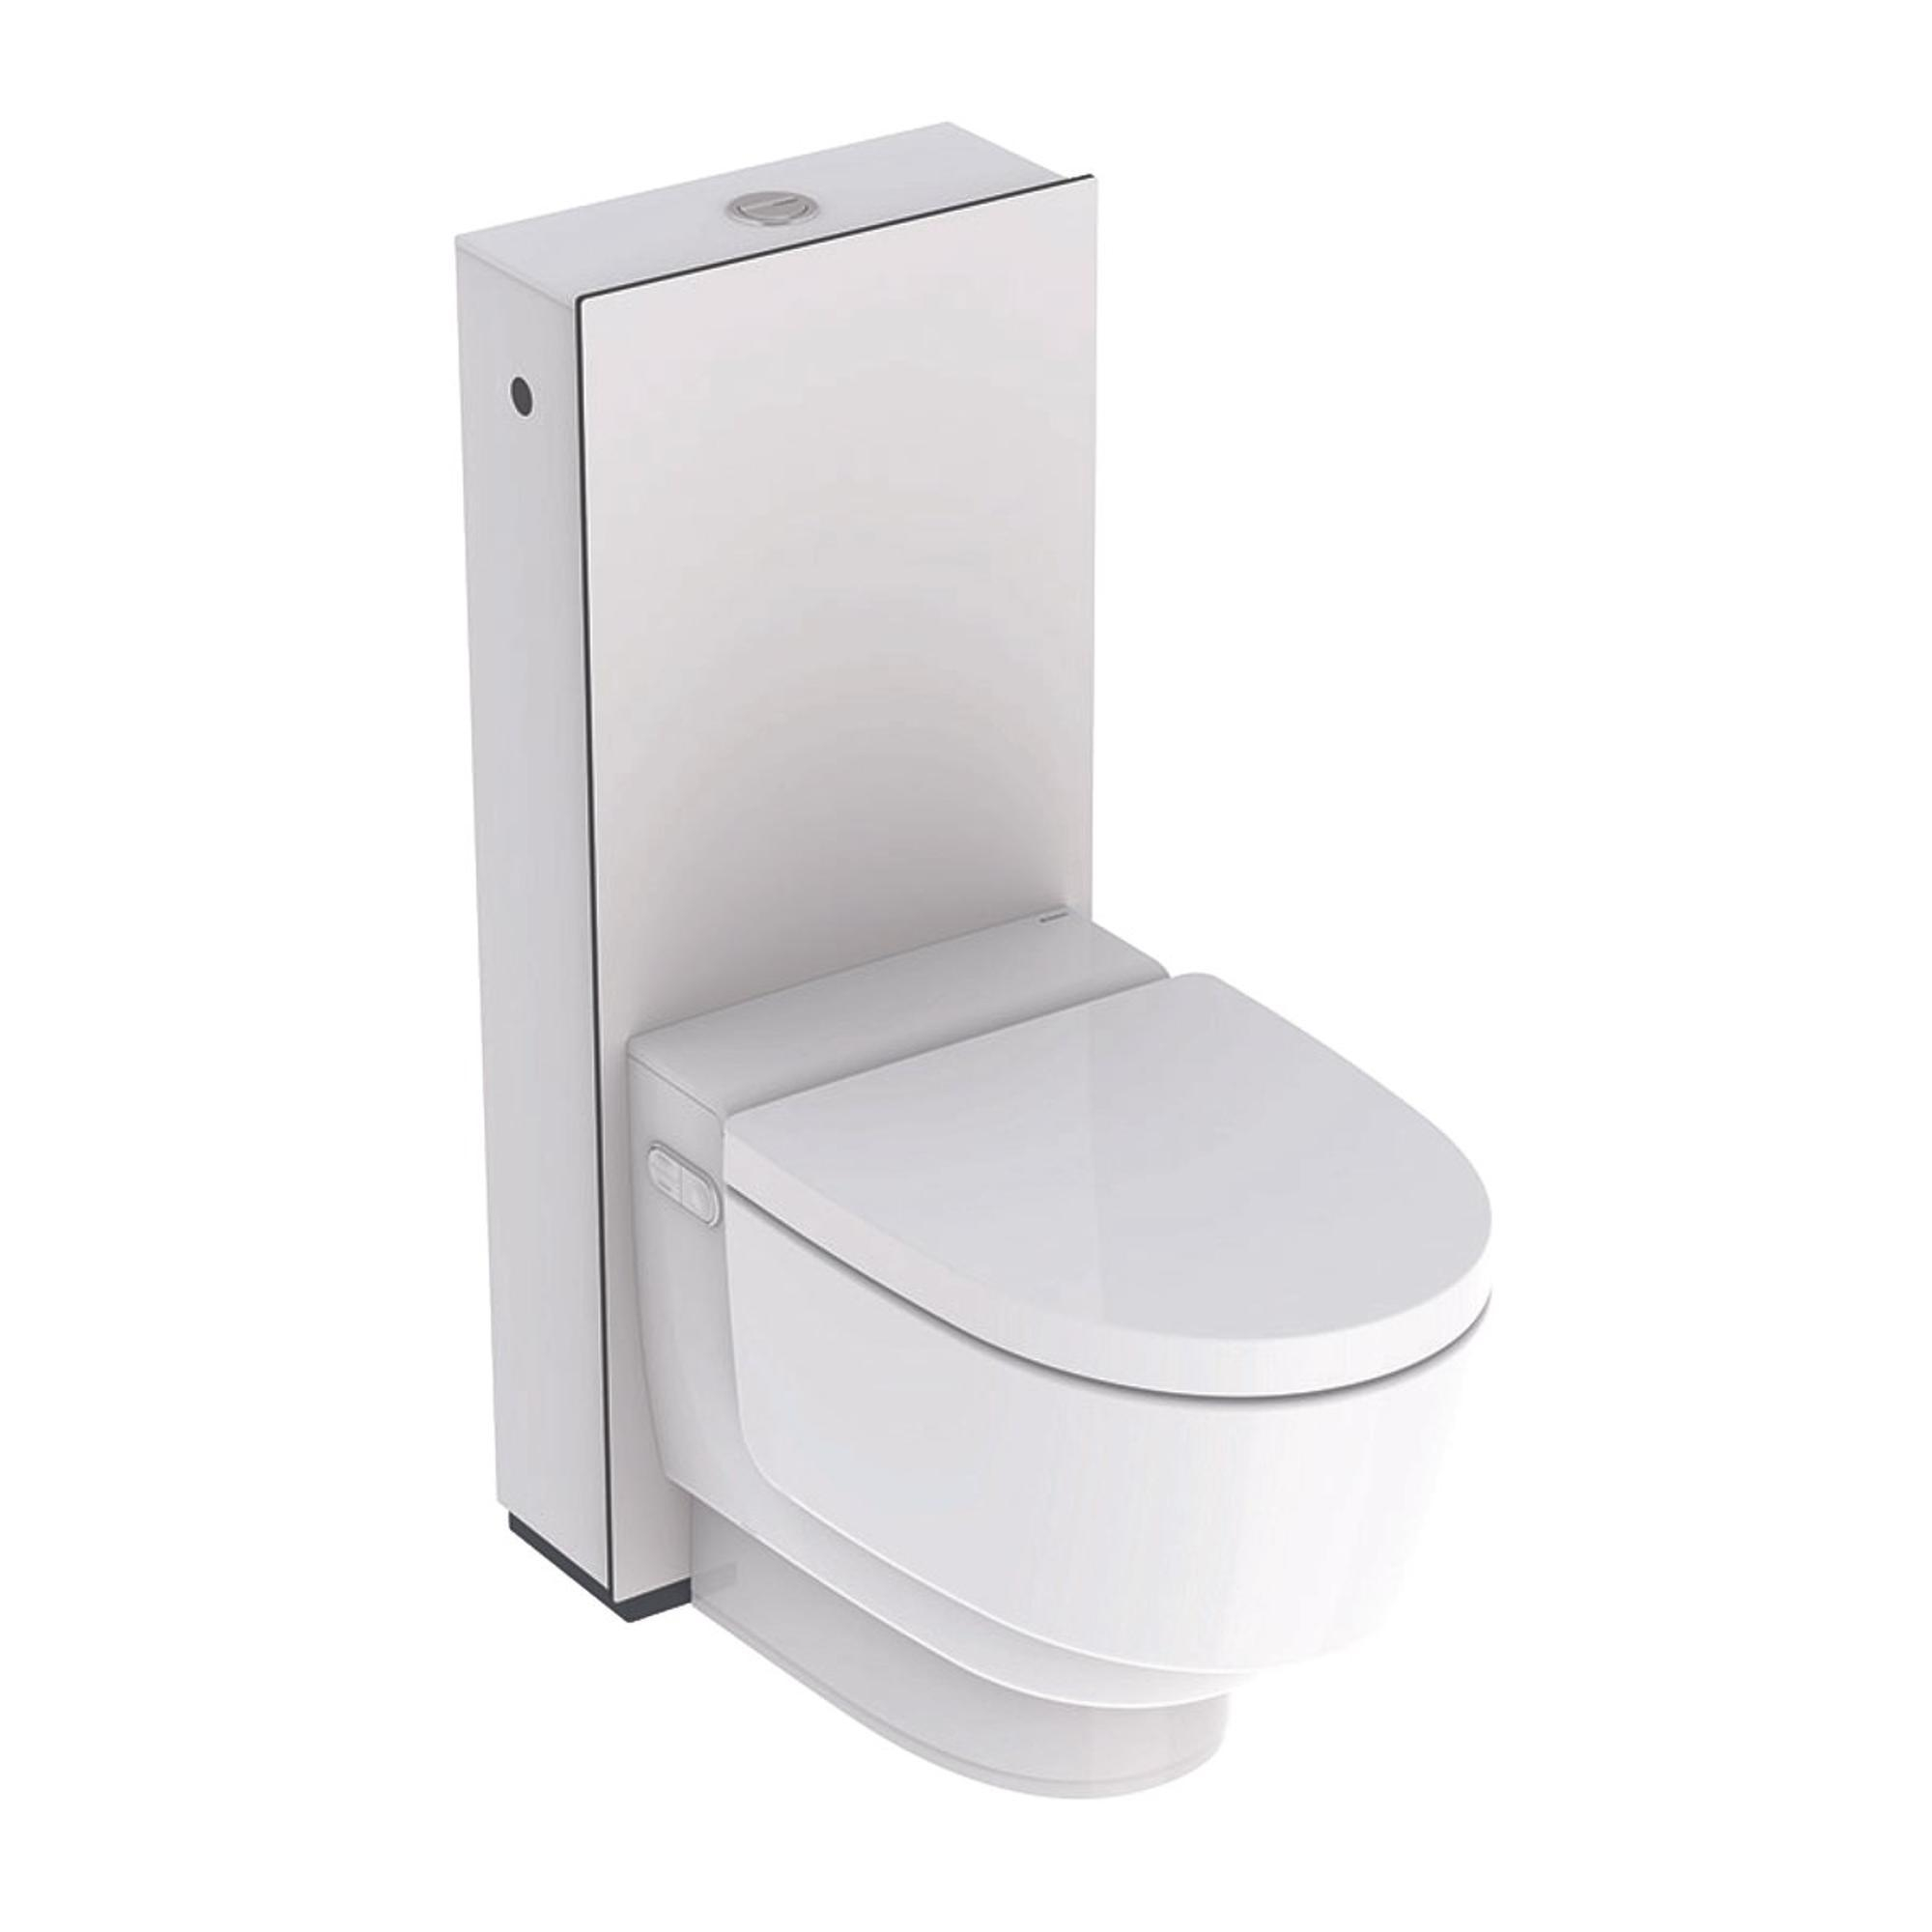 Geberit AquaClean Mera Comfort WC japonais sur pied sans bride